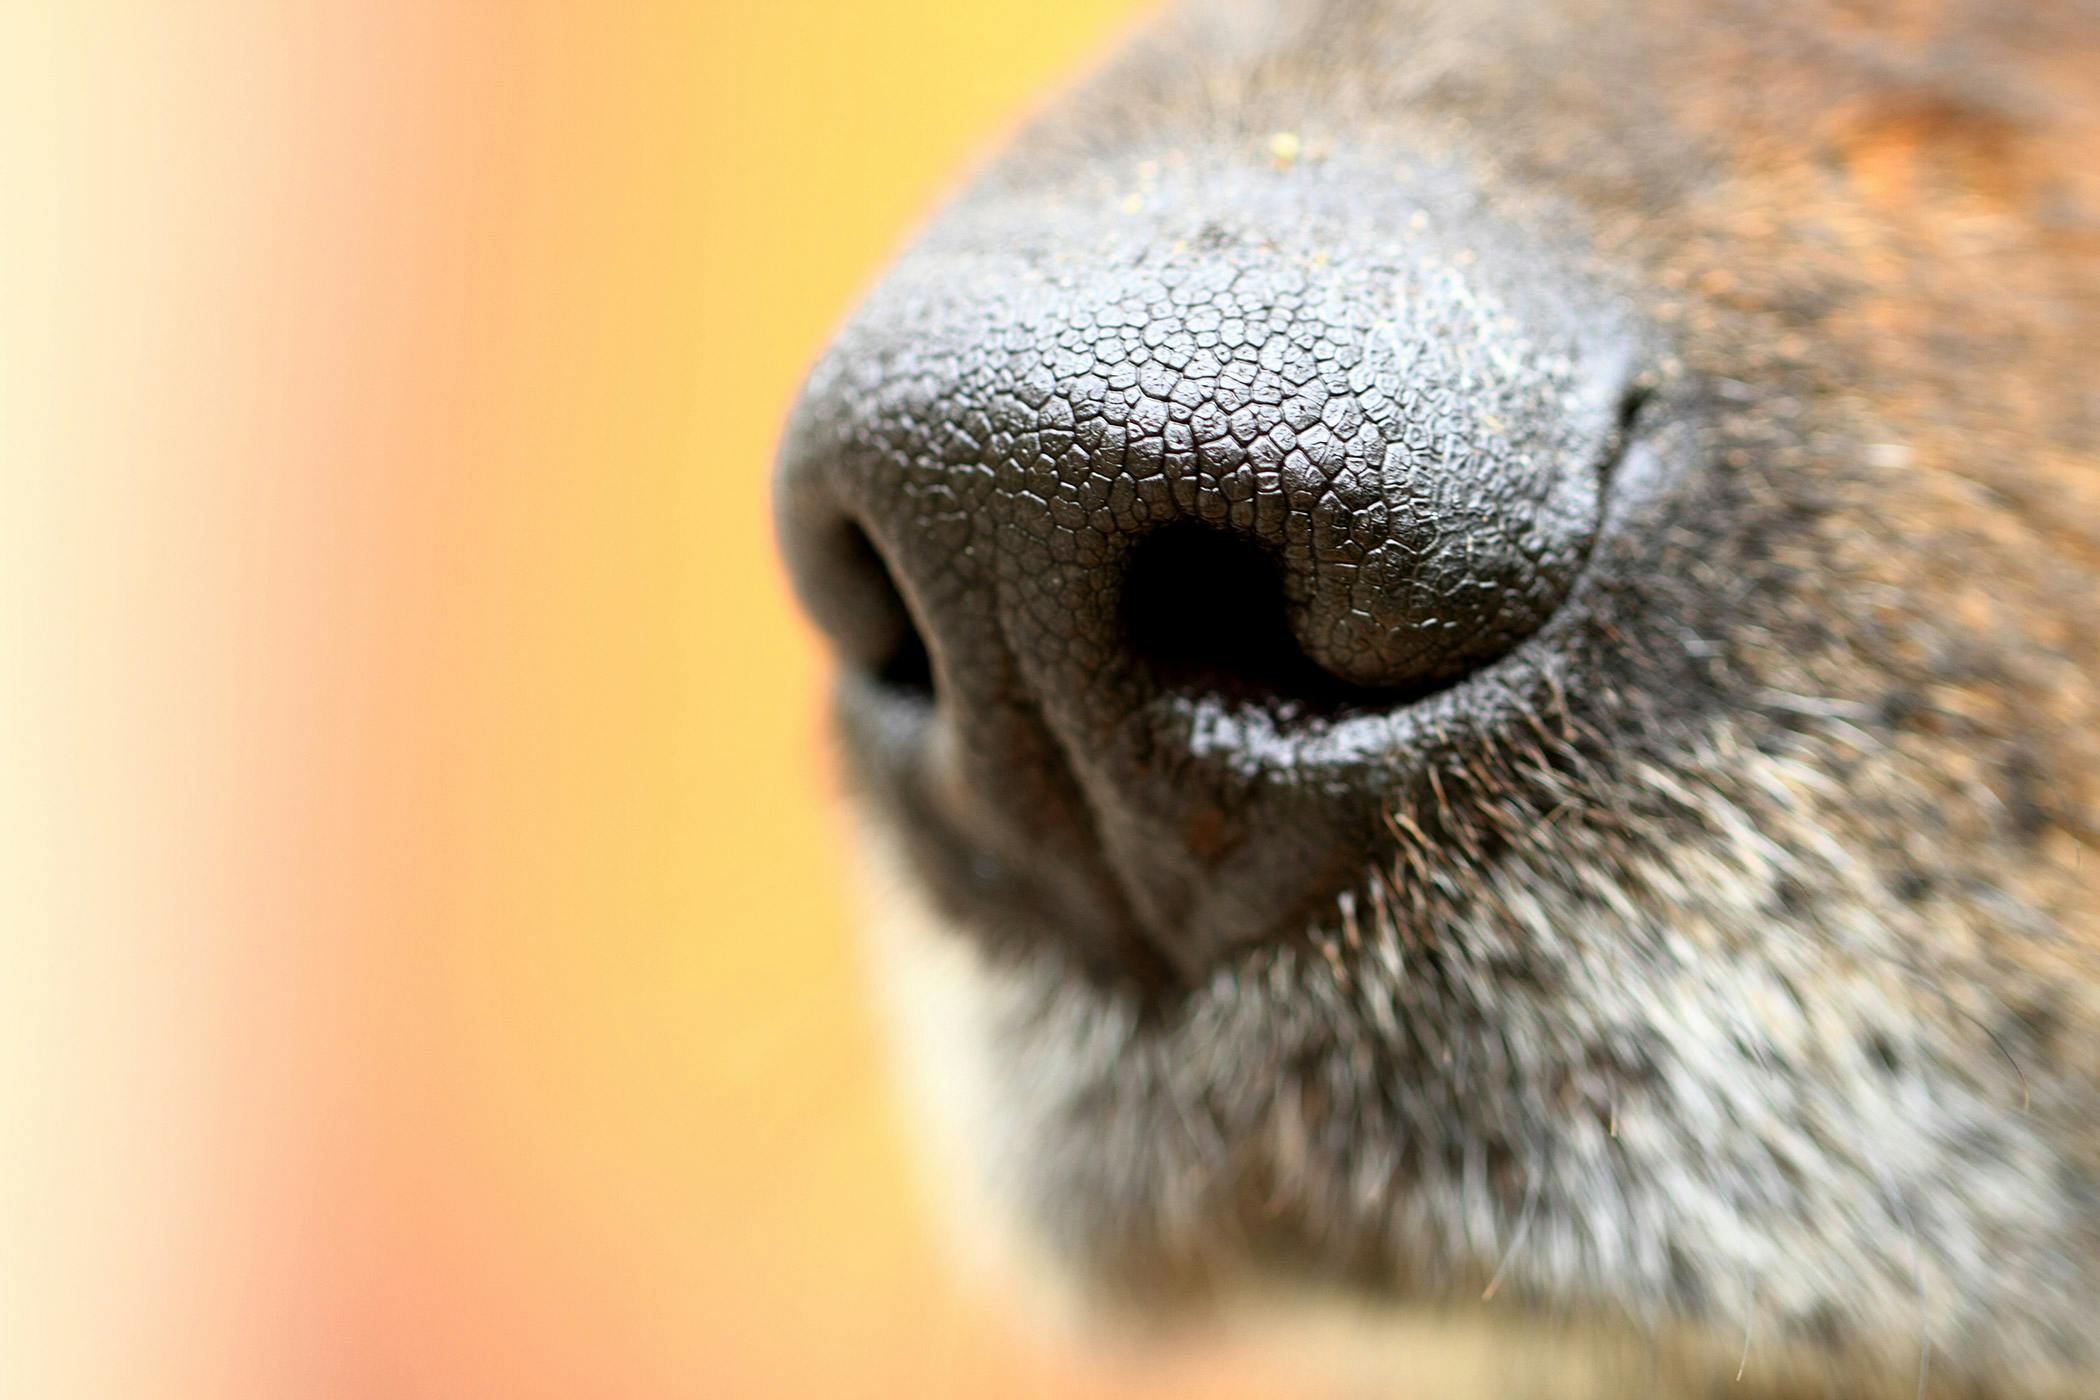 dog bloody nose sneezing